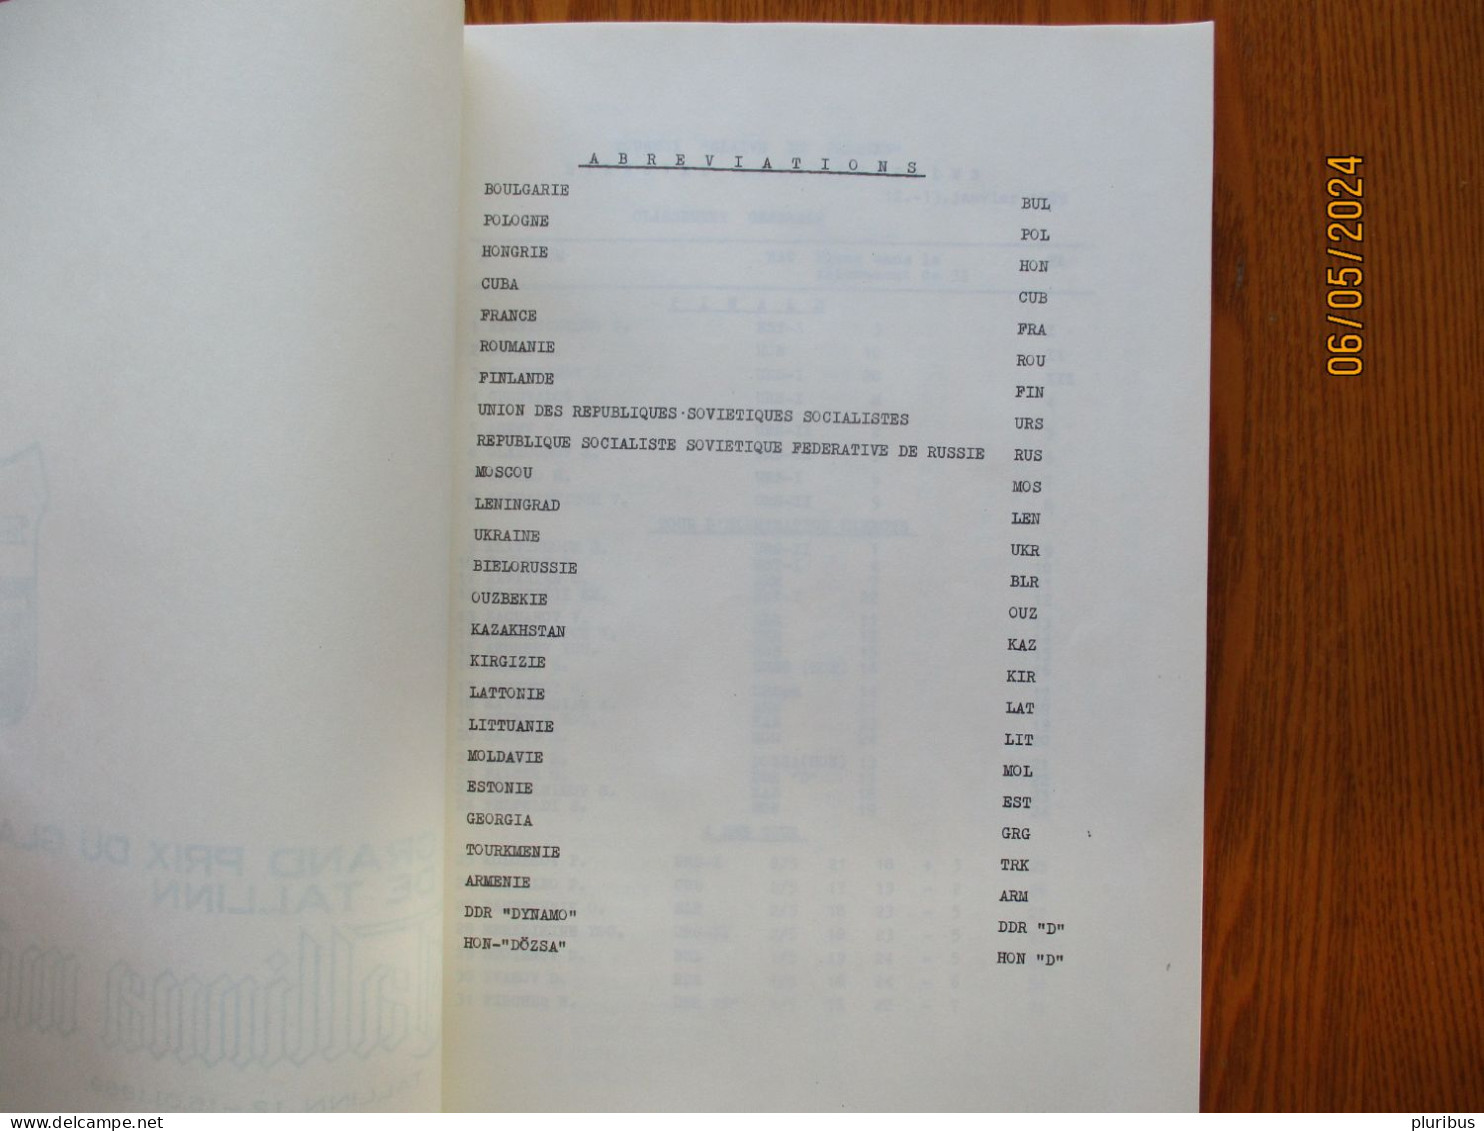 FENCING GRAND PRIX DU GLAIVE DE TALLINN 1989 RESULTS , 14-9 - Esgrima